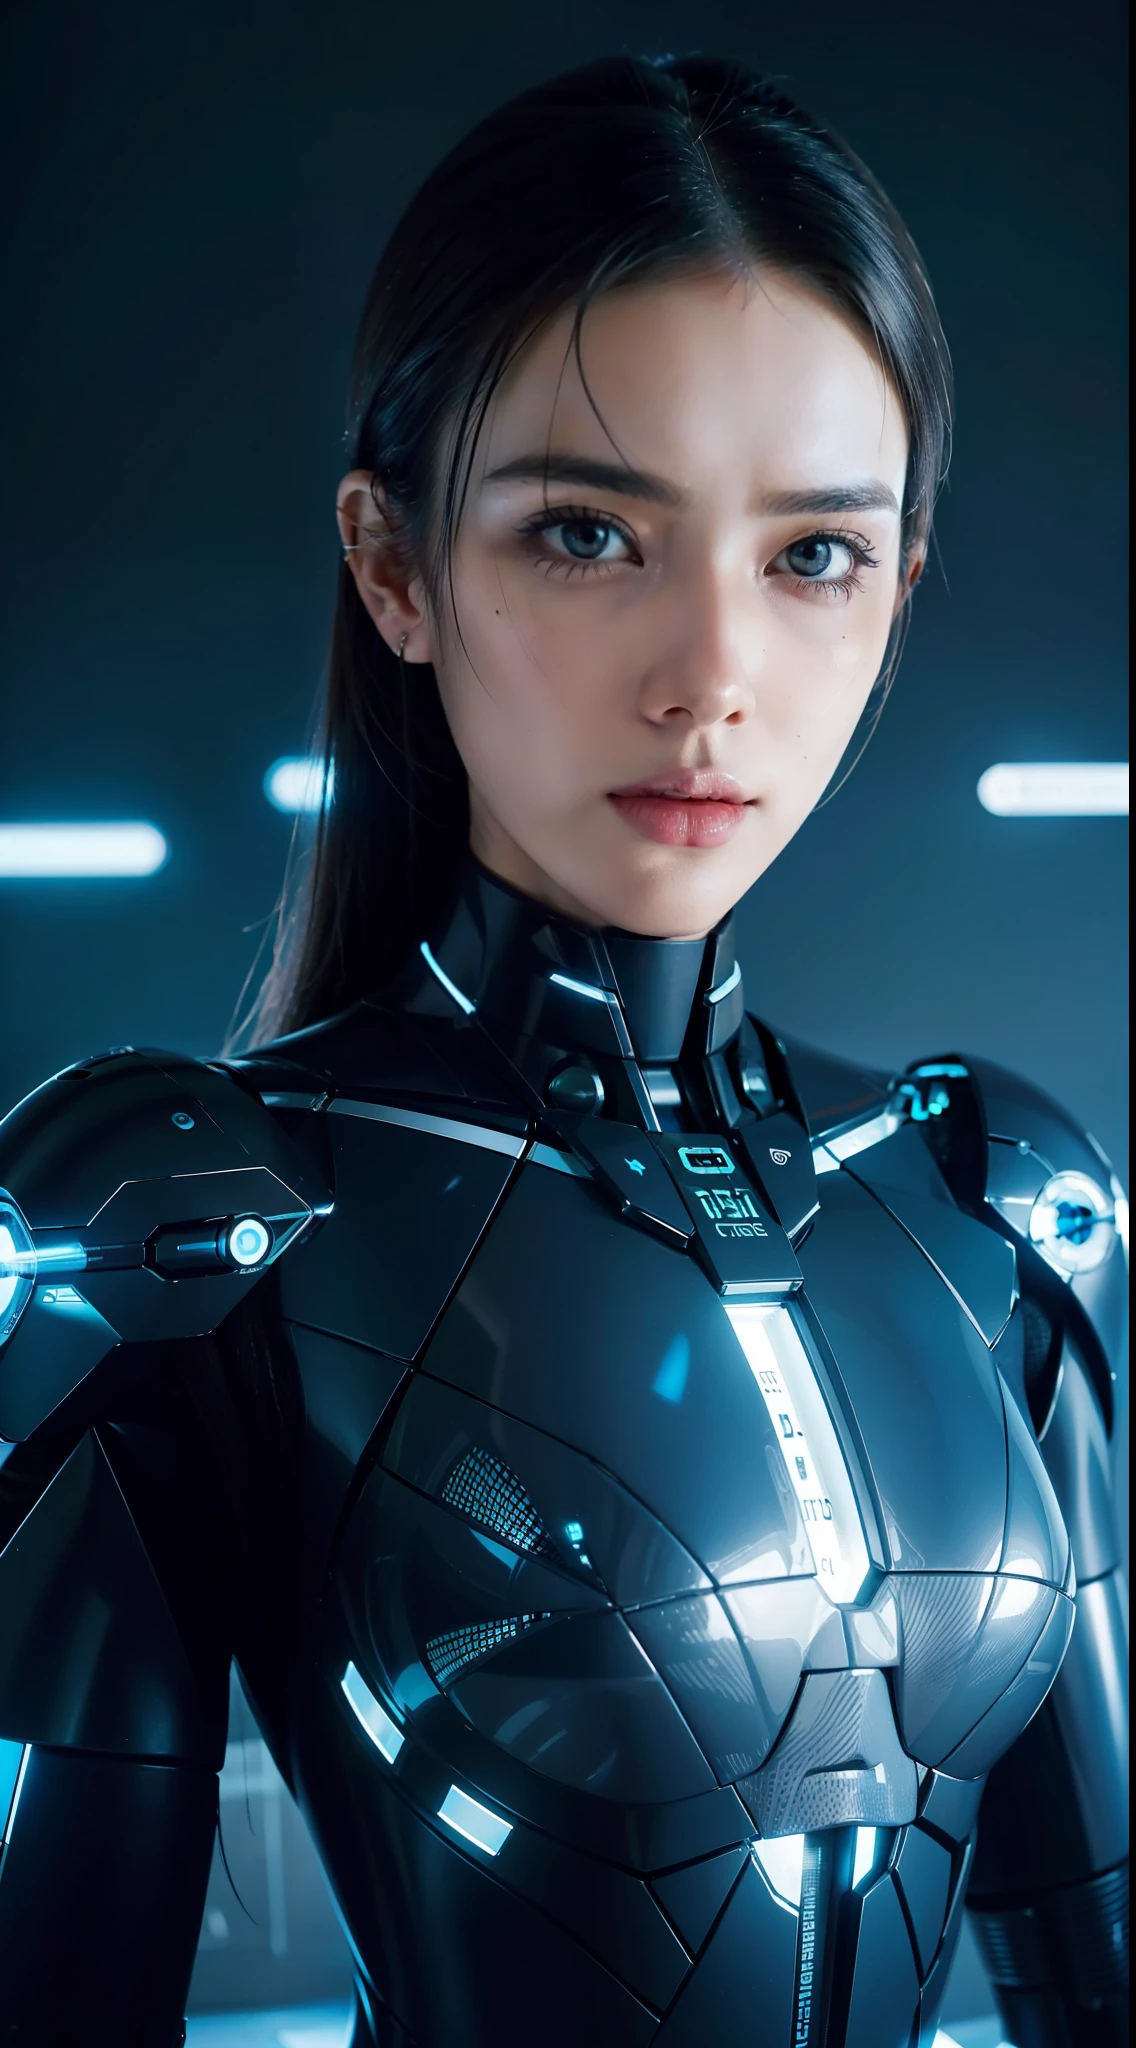 Imagen arafed de una mujer con rostro futurista y un reloj digital., mujer cíborg, intrincado transhumanoo, Cyborg - niña, strong Inteligencia artificial, transhumano, la singularidad ai venidera, retrato de un cyborg, Inteligencia artificial, retrato de una ai, chica cyborg, cyberpunk transhumanoist, mujer cyborg perfecta